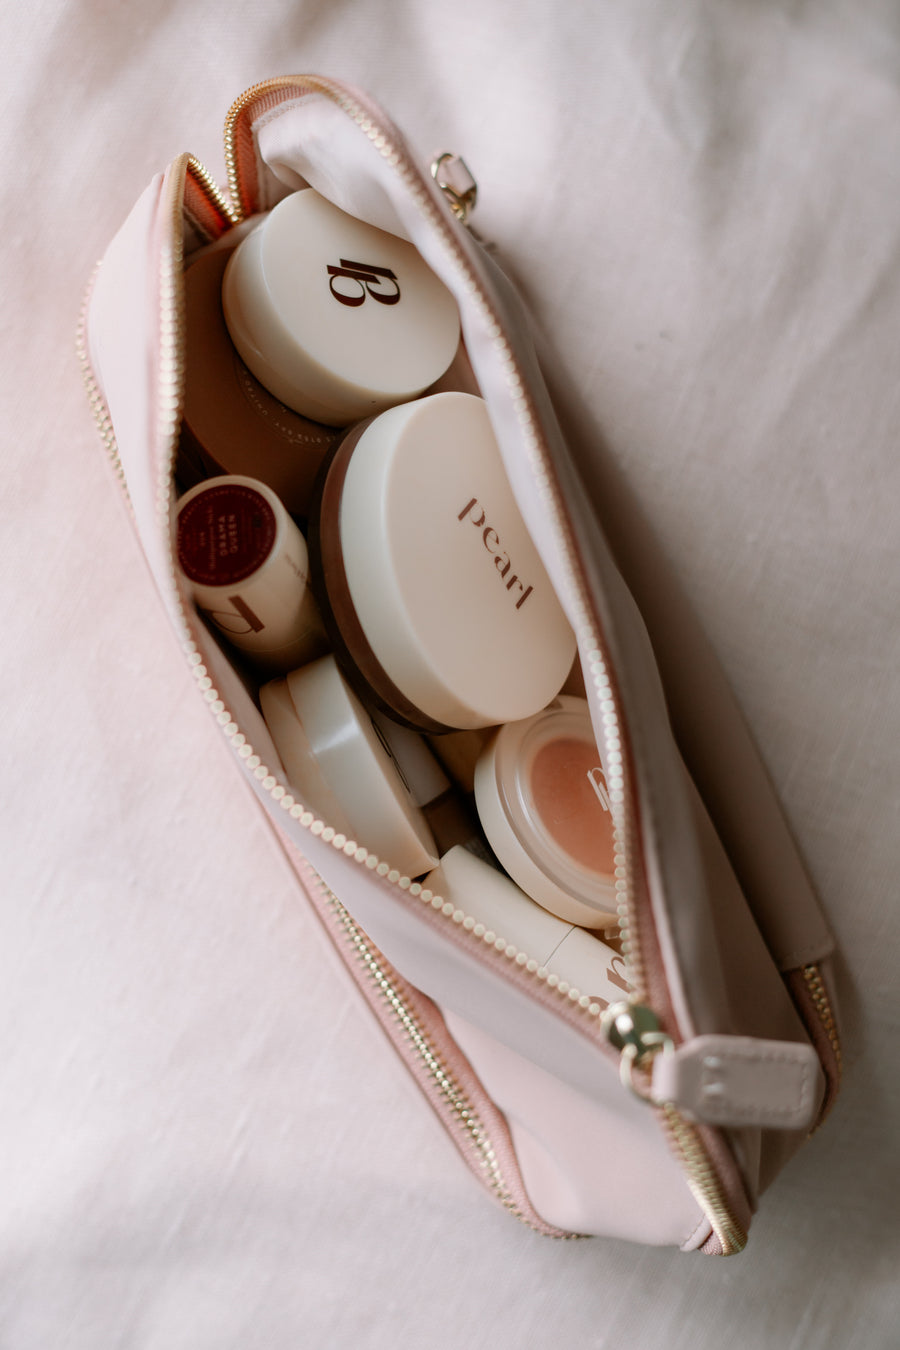 The Everyday Essentials Makeup Bag